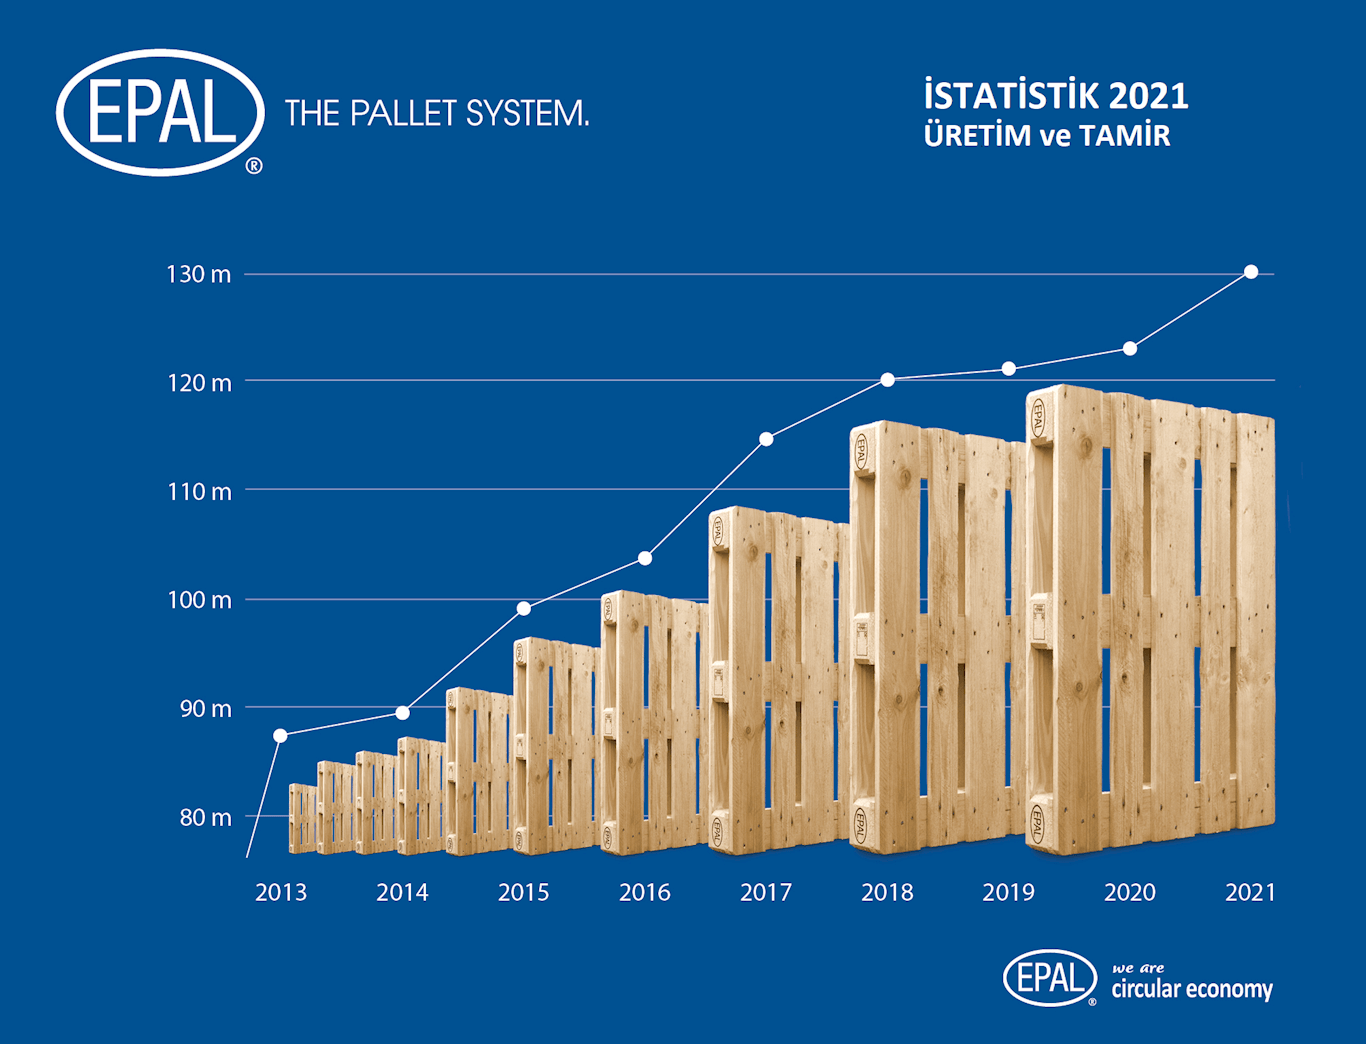 EPAL palet üretimi 2021'de rekor seviyeye yükseldi